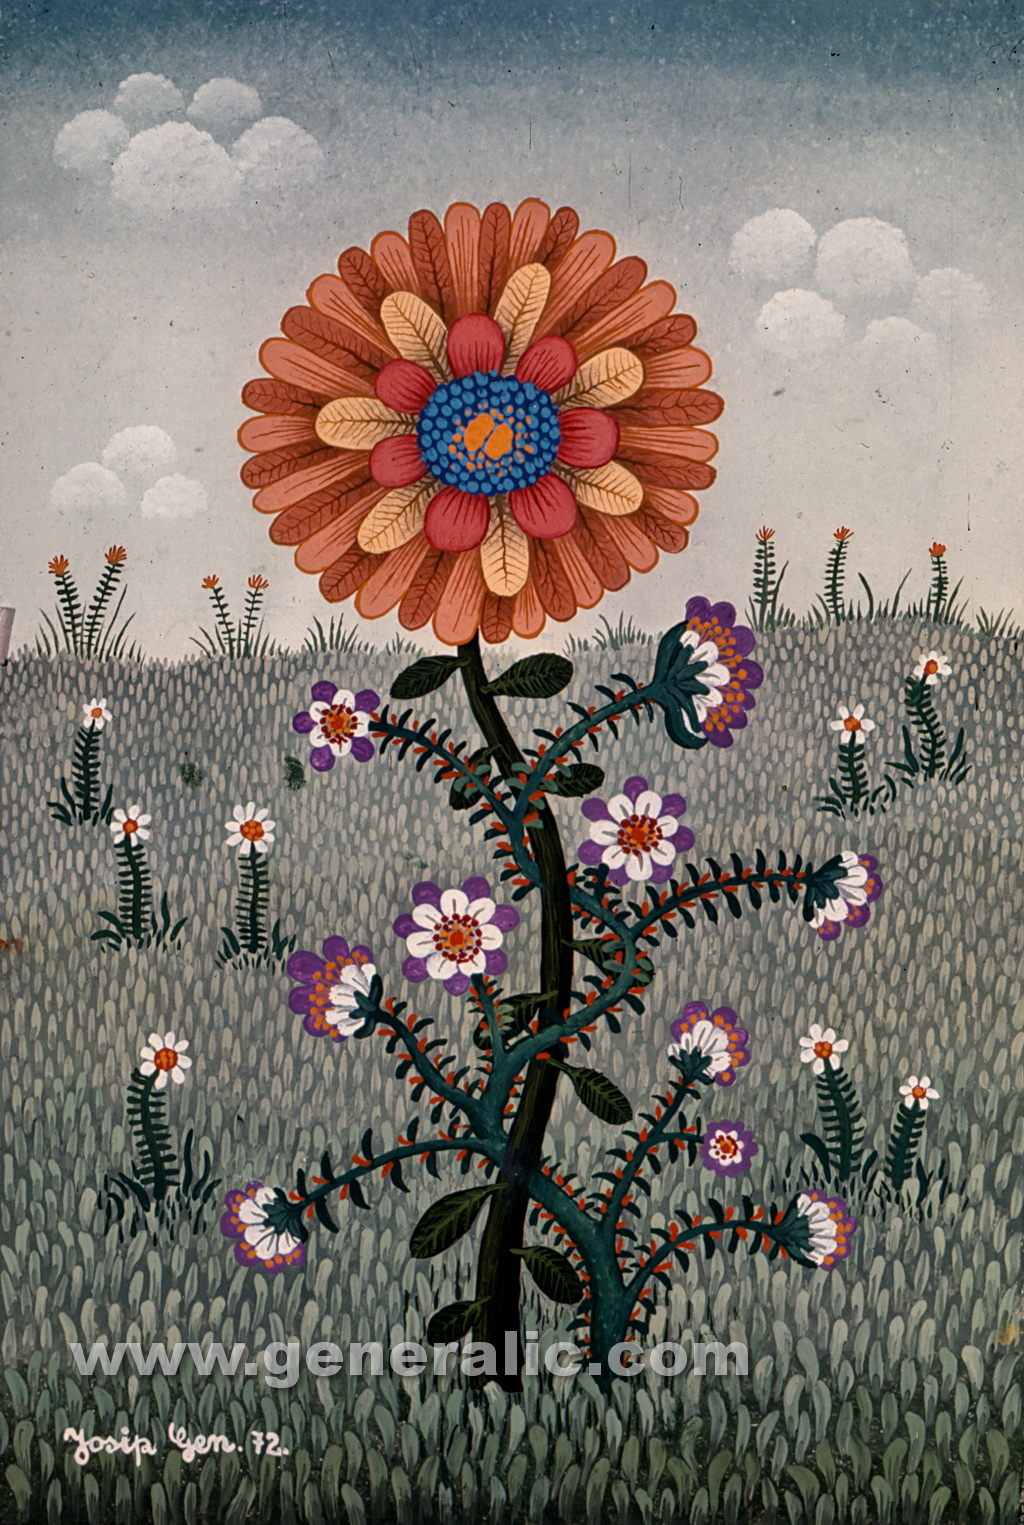 Josip Generalic, 1972, Red flower, oil on canvas